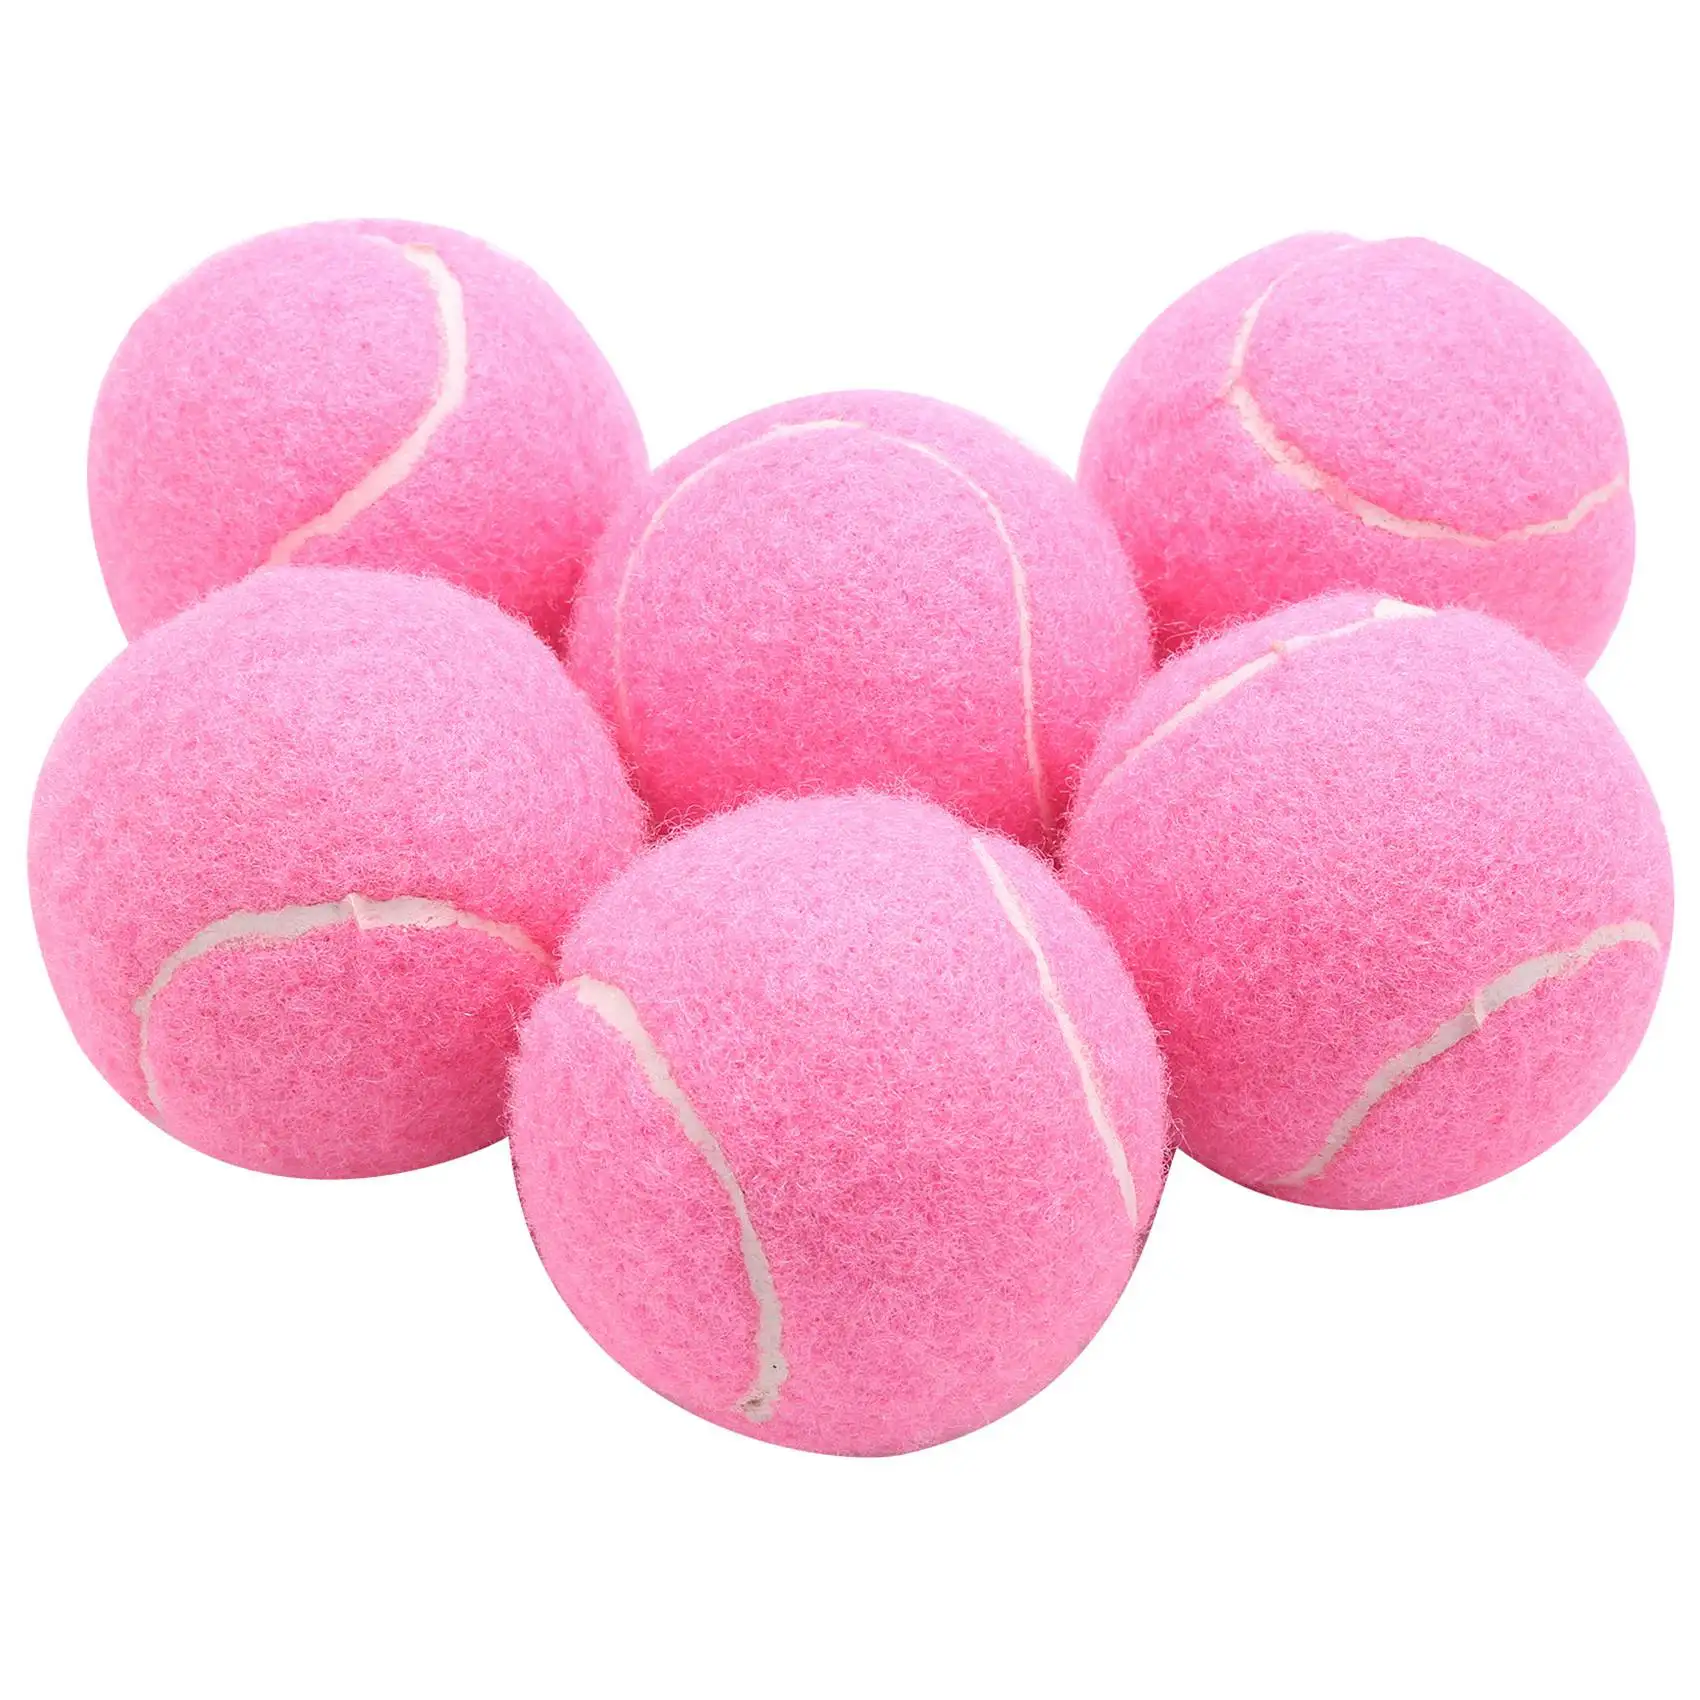 

Мячи для тенниса розовые износостойкие эластичные, 66 мм, 6 шт./упаковка